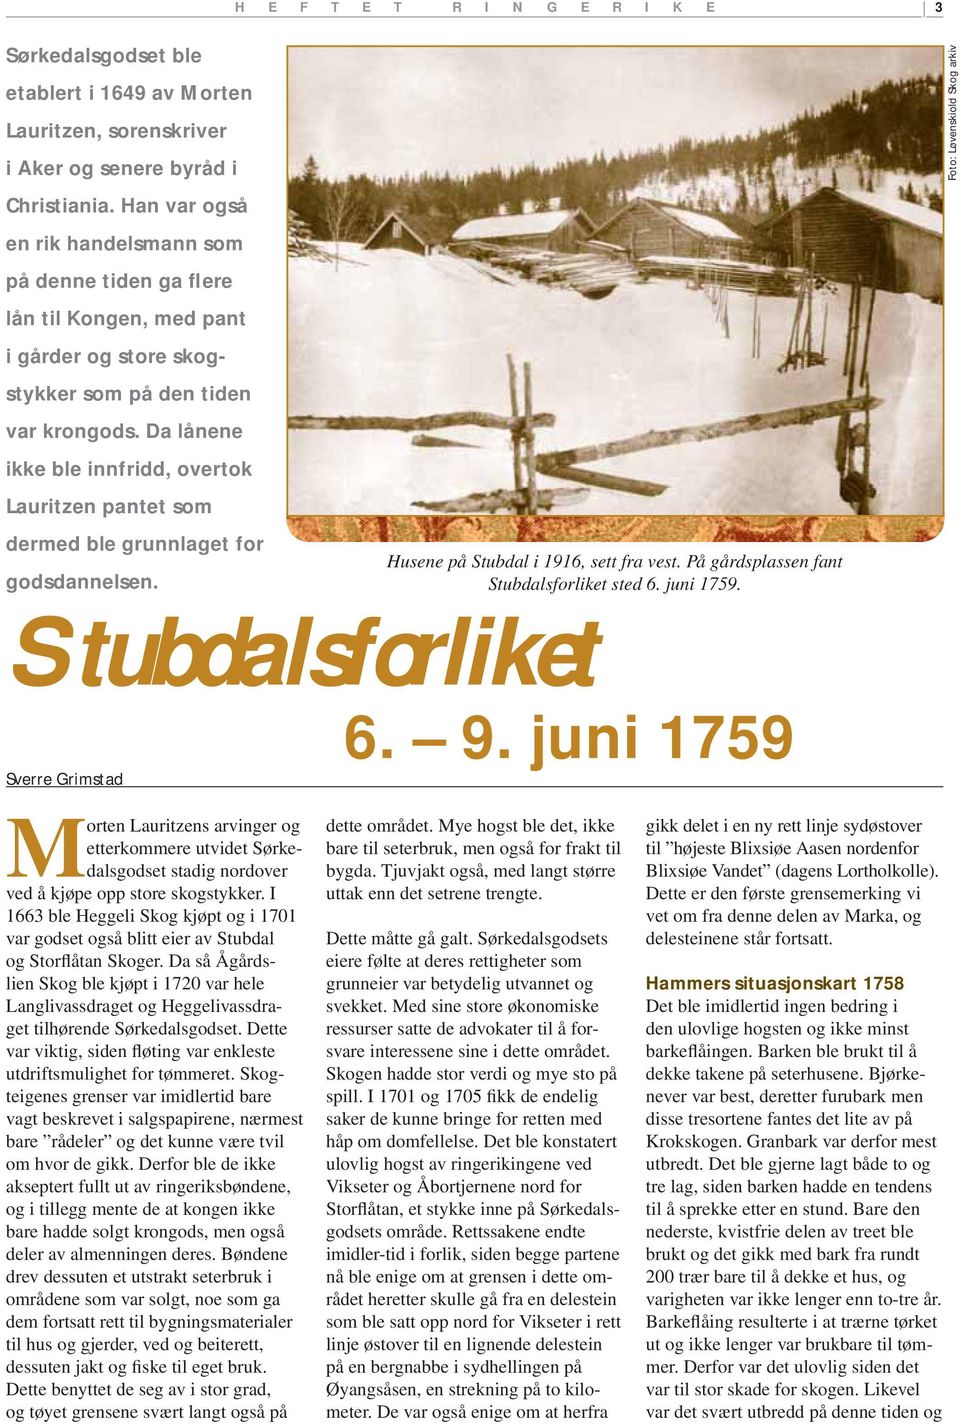 Da lånene ikke ble innfridd, overtok Lauritzen pantet som dermed ble grunnlaget for godsdannelsen. Husene på Stubdal i 1916, sett fra vest. På gårdsplassen fant Stubdalsforliket sted 6. juni 1759.